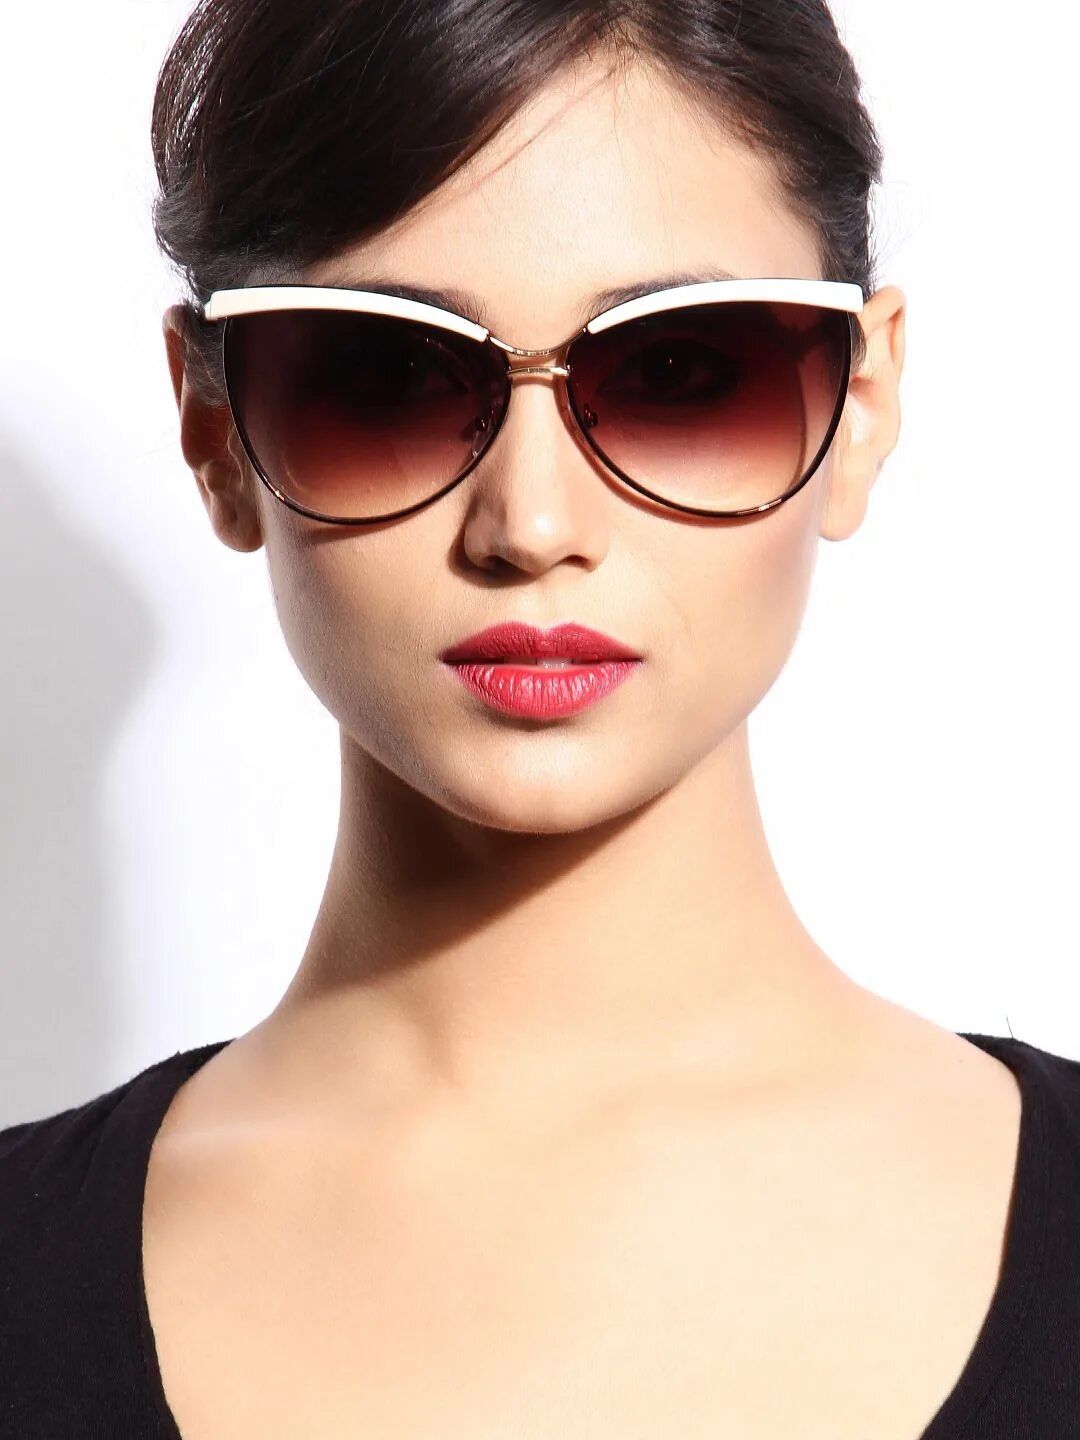 Форма очков для круглого лица женские солнцезащитные. Очки Cantilena солнцезащитные. Стильные очки. Модные солнечные очки. Стильные очки солнцезащитные женские.